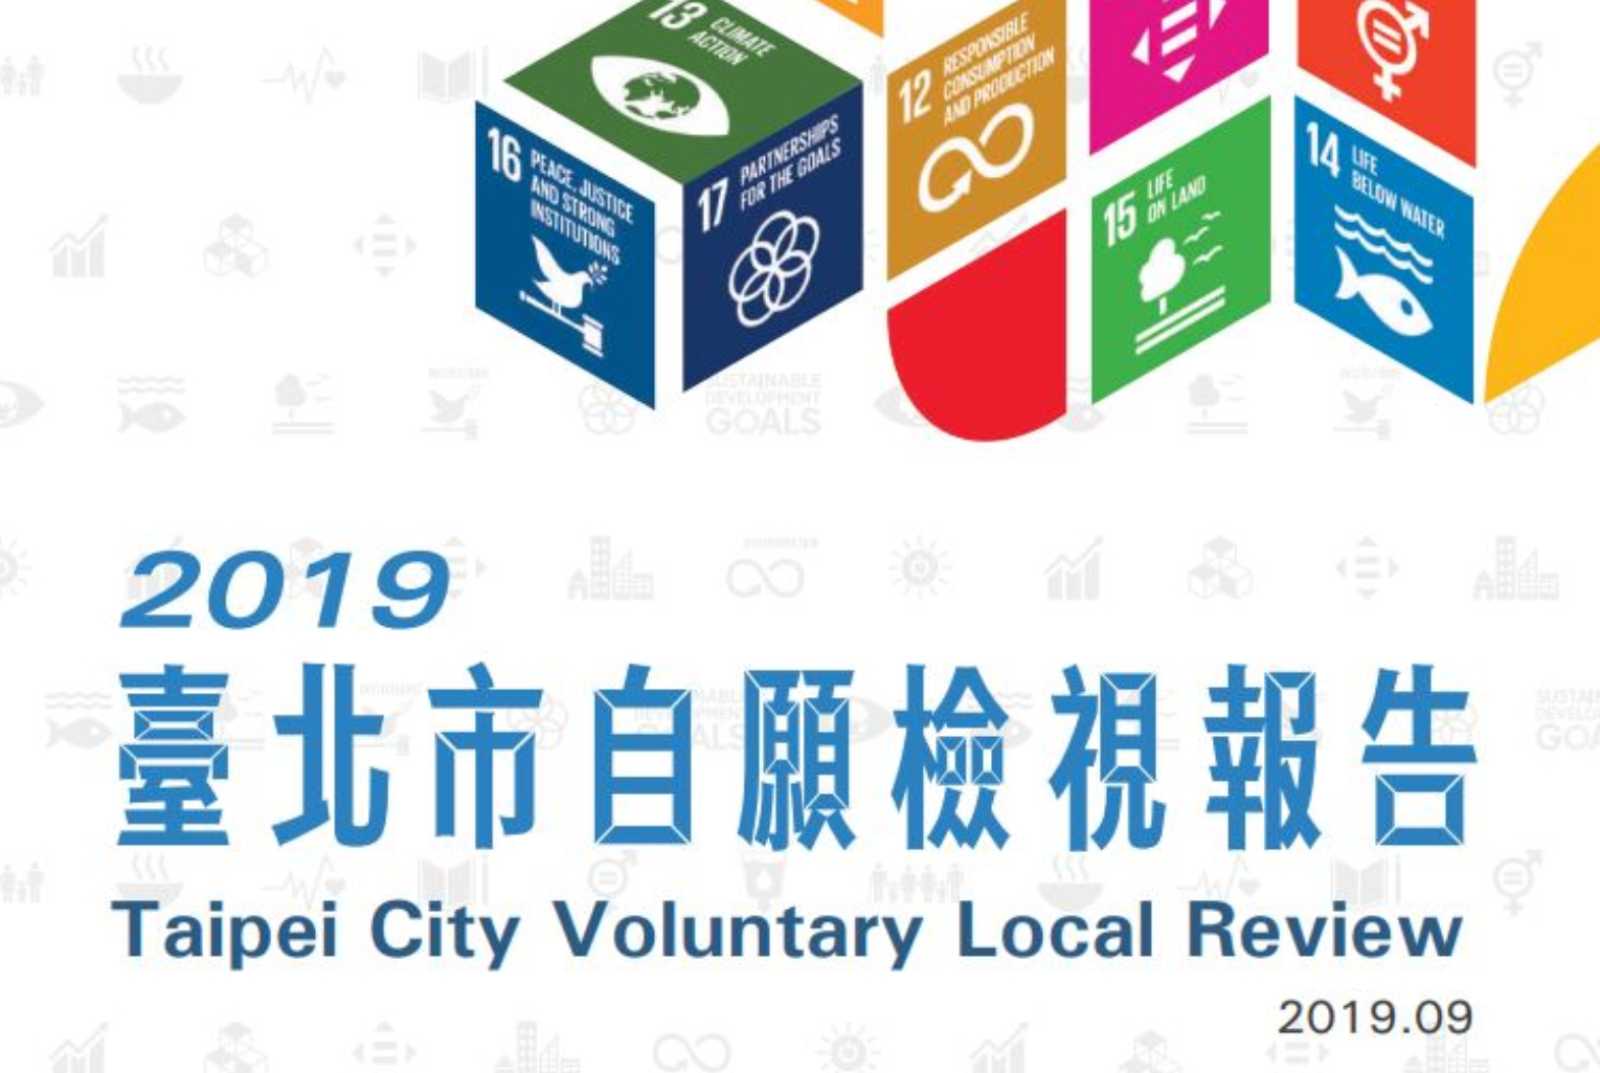 台北市 SDGs VLR 地方自願檢視報告 聯合國永續發展目標